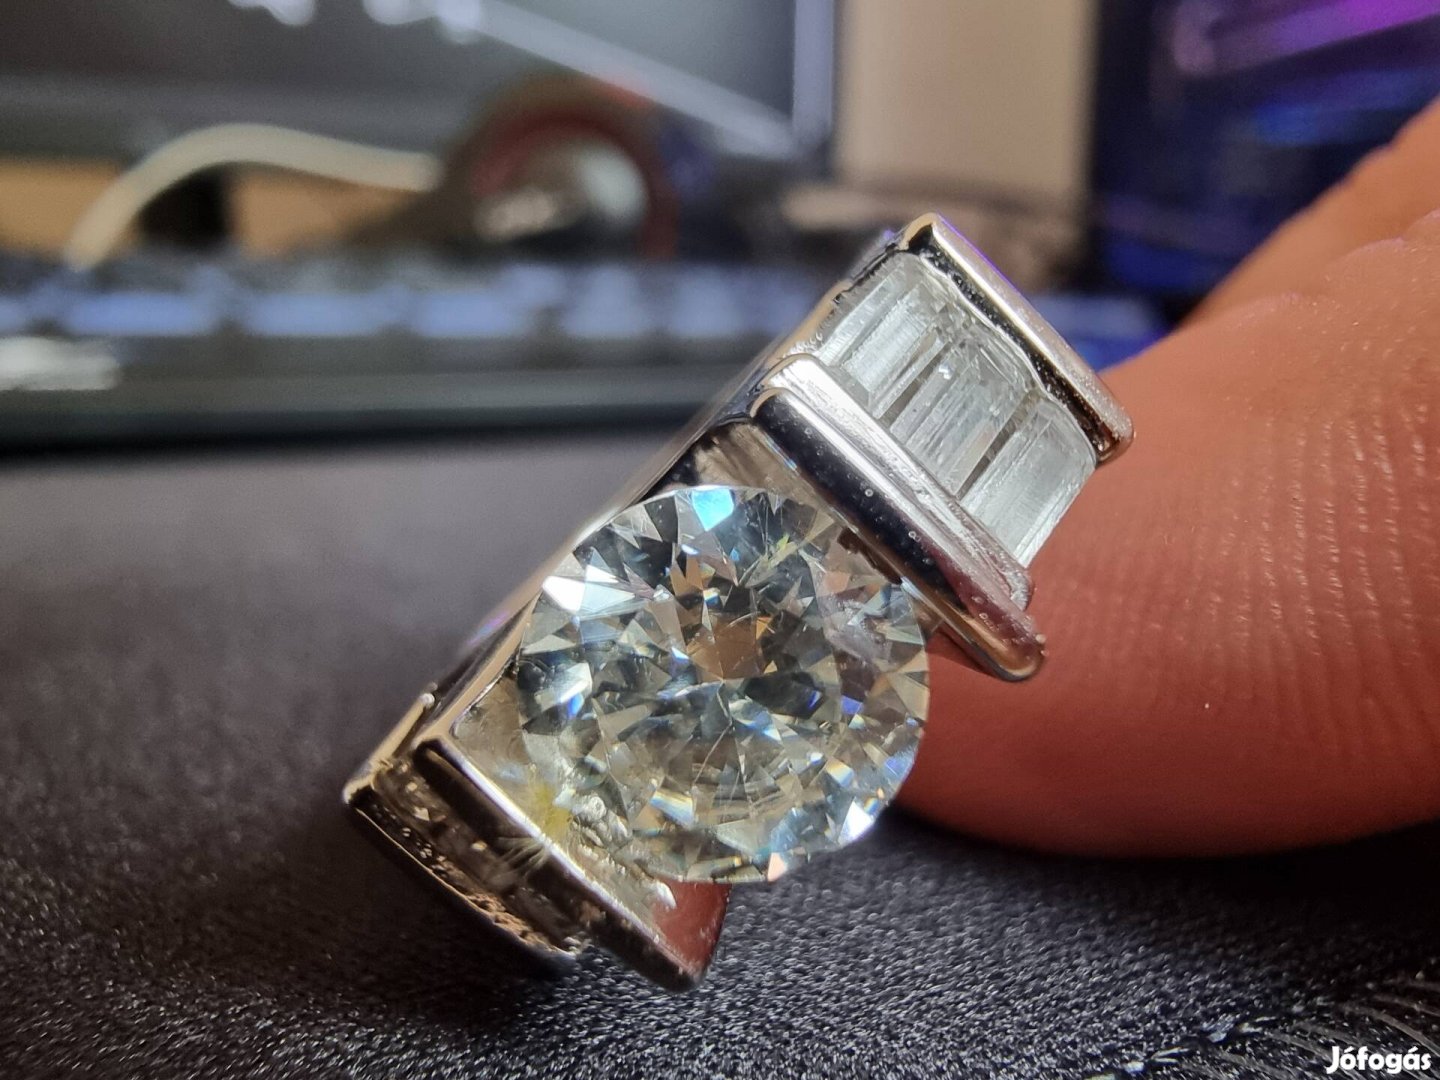 Valódi Moissanite gyémánt ezüstgyűrű.